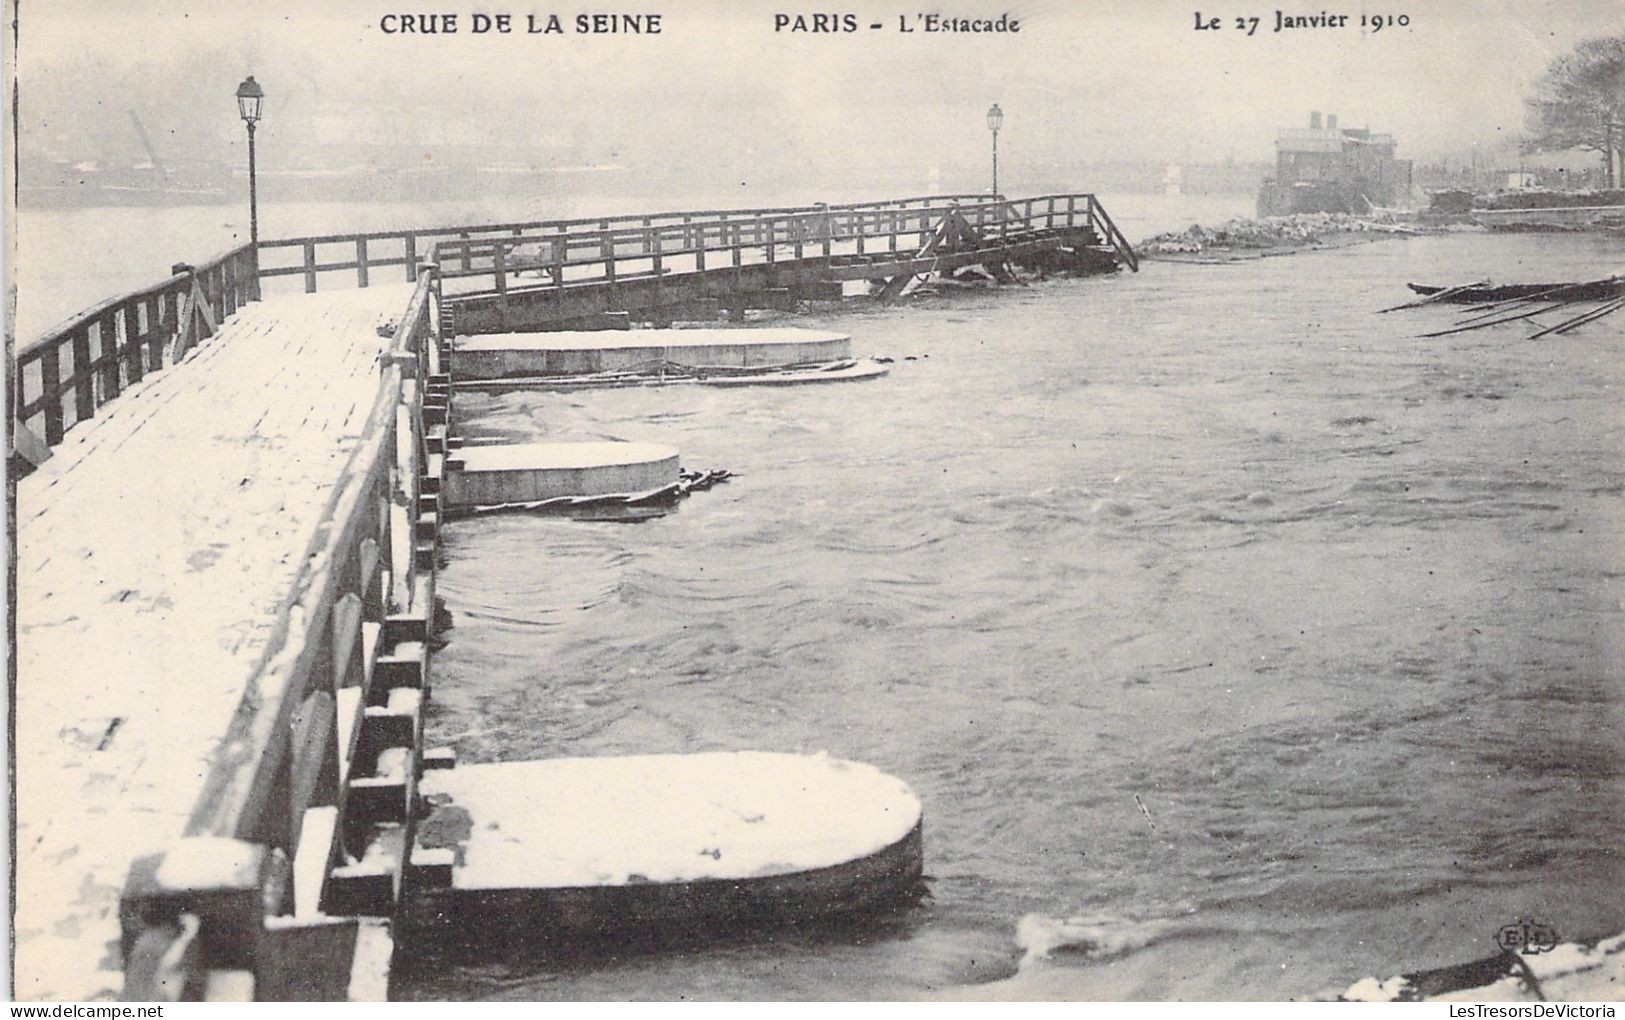 FRANCE - Paris - La Grande Crue De La Seine - L'estacade - 27 Janvier 1910 - Carte Postale Ancienne - The River Seine And Its Banks